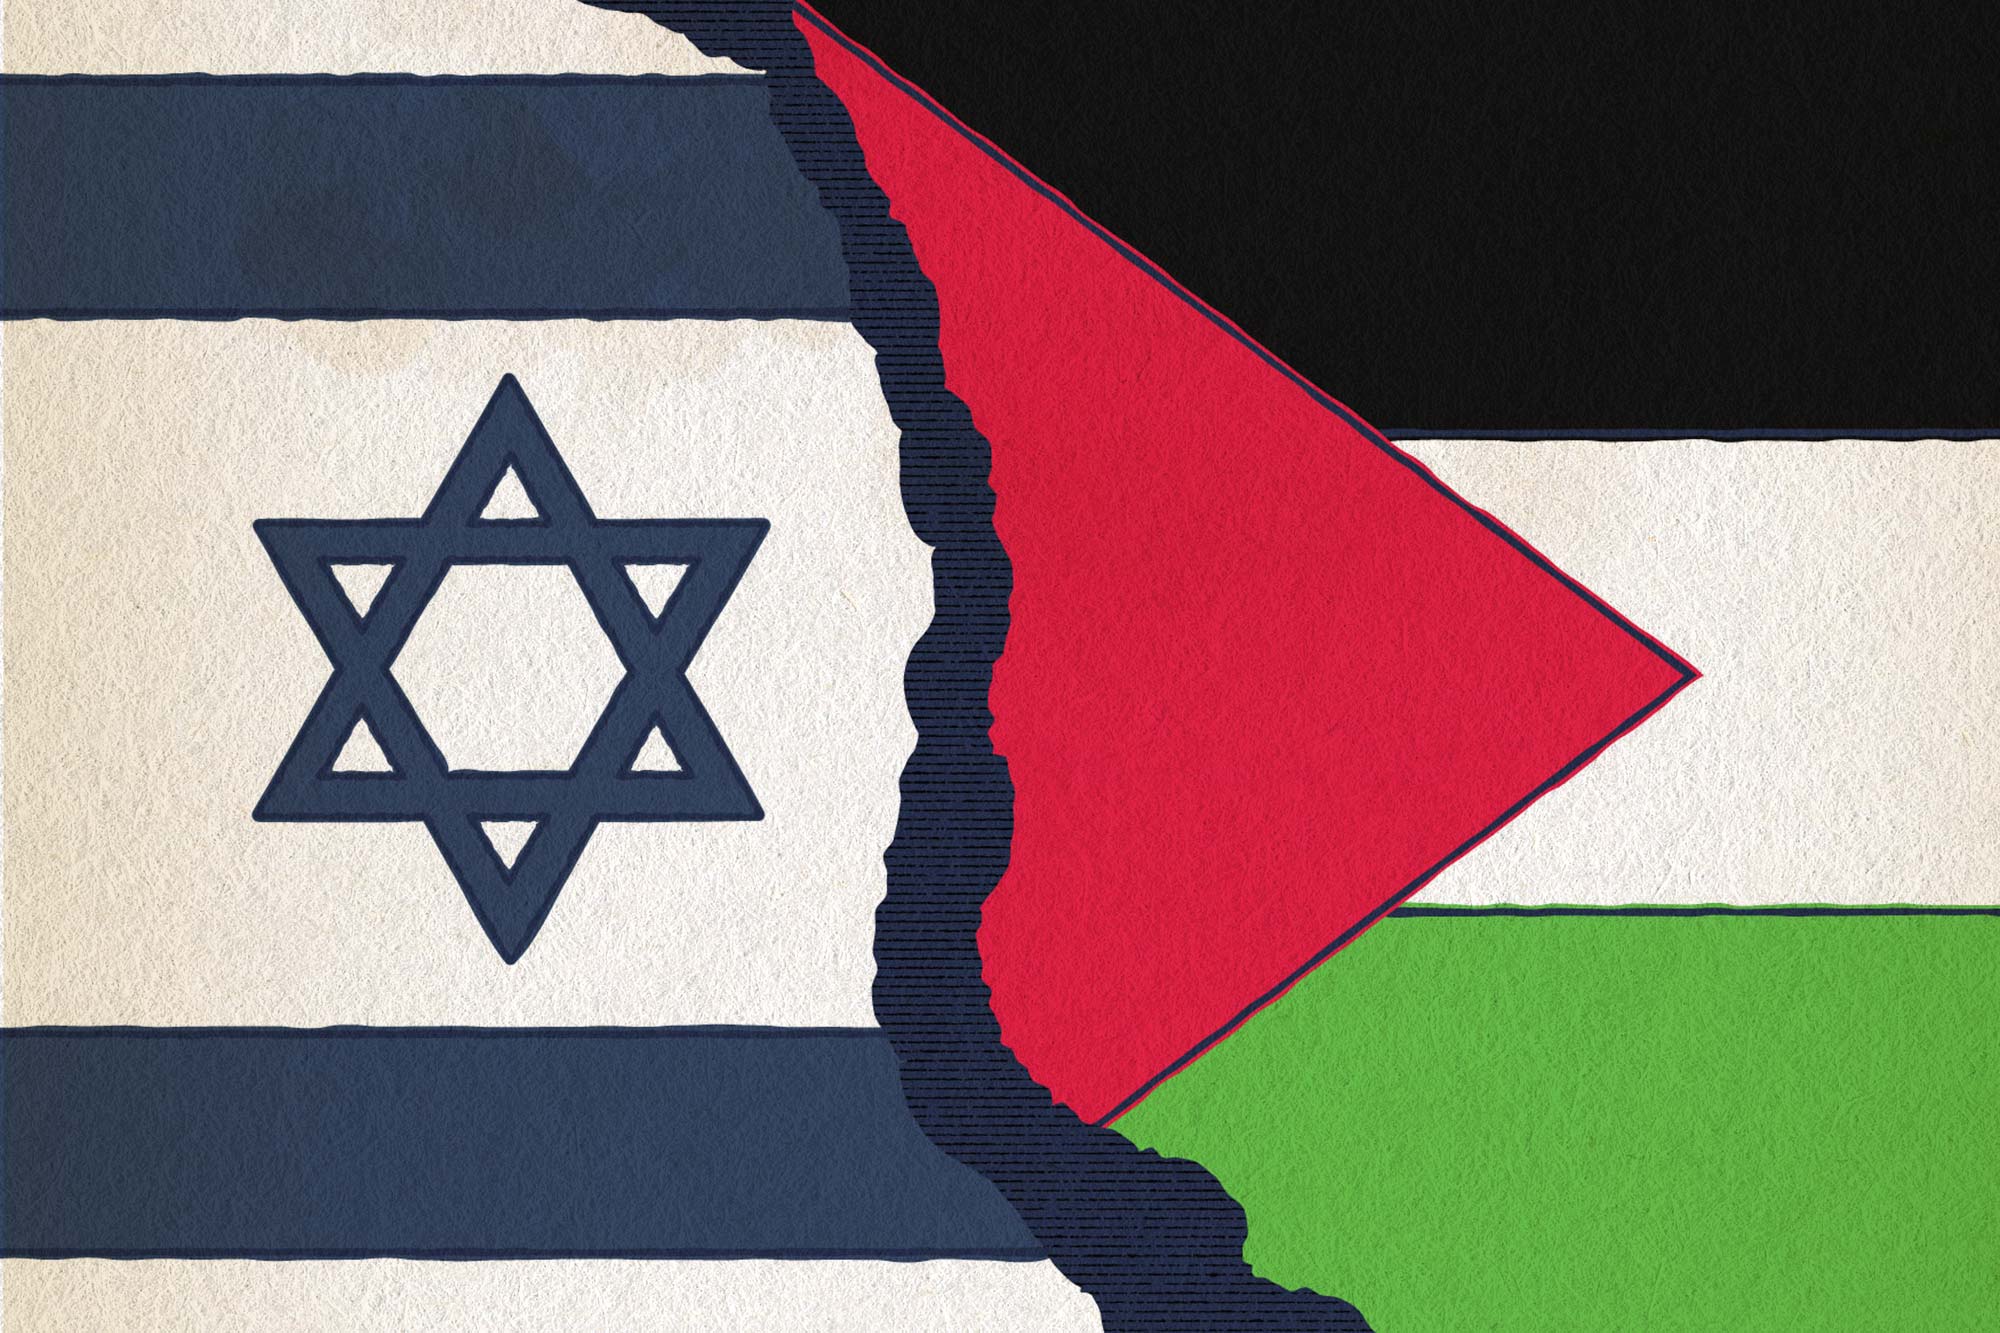 Футболист Месут Озил выразил солидарность с Палестиной